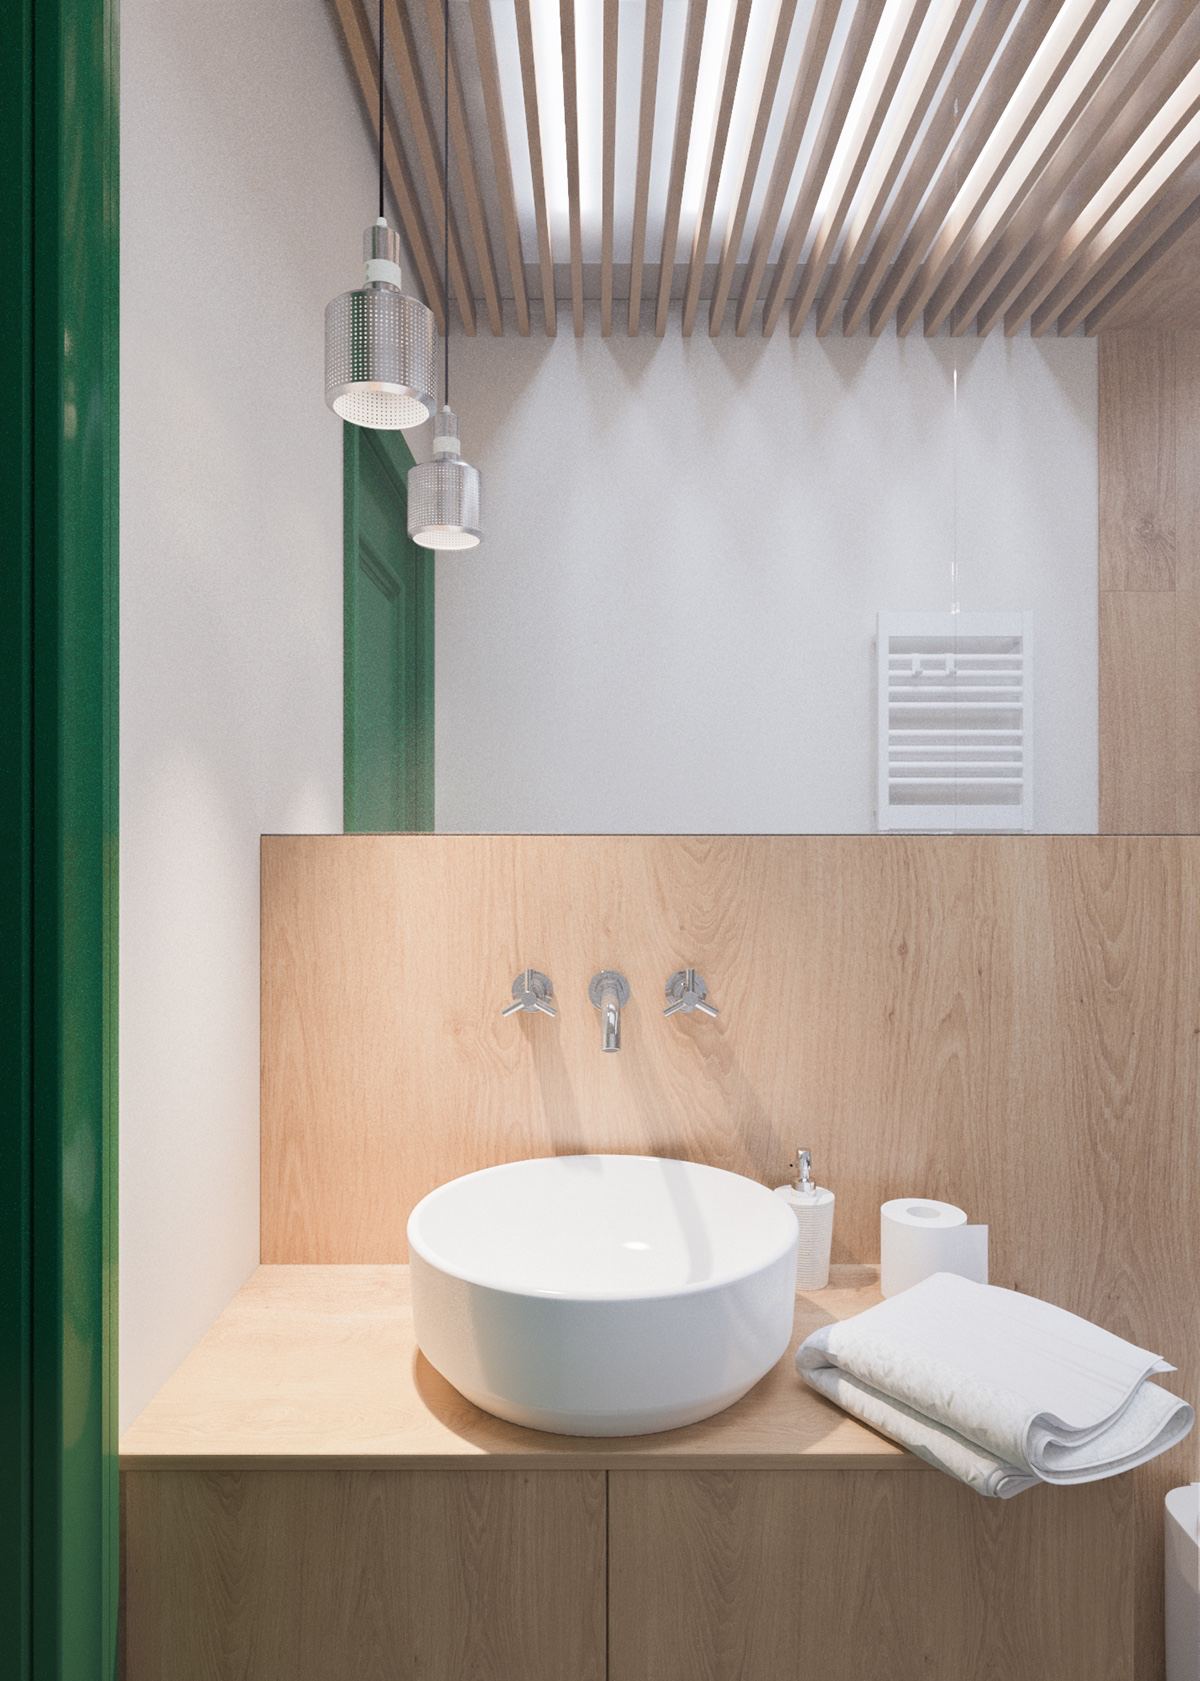 Claves_para_crear_contrastes_de_color_en_la_decoración_espacio_baño_wood-and-green-bathroom-with-skylight-min